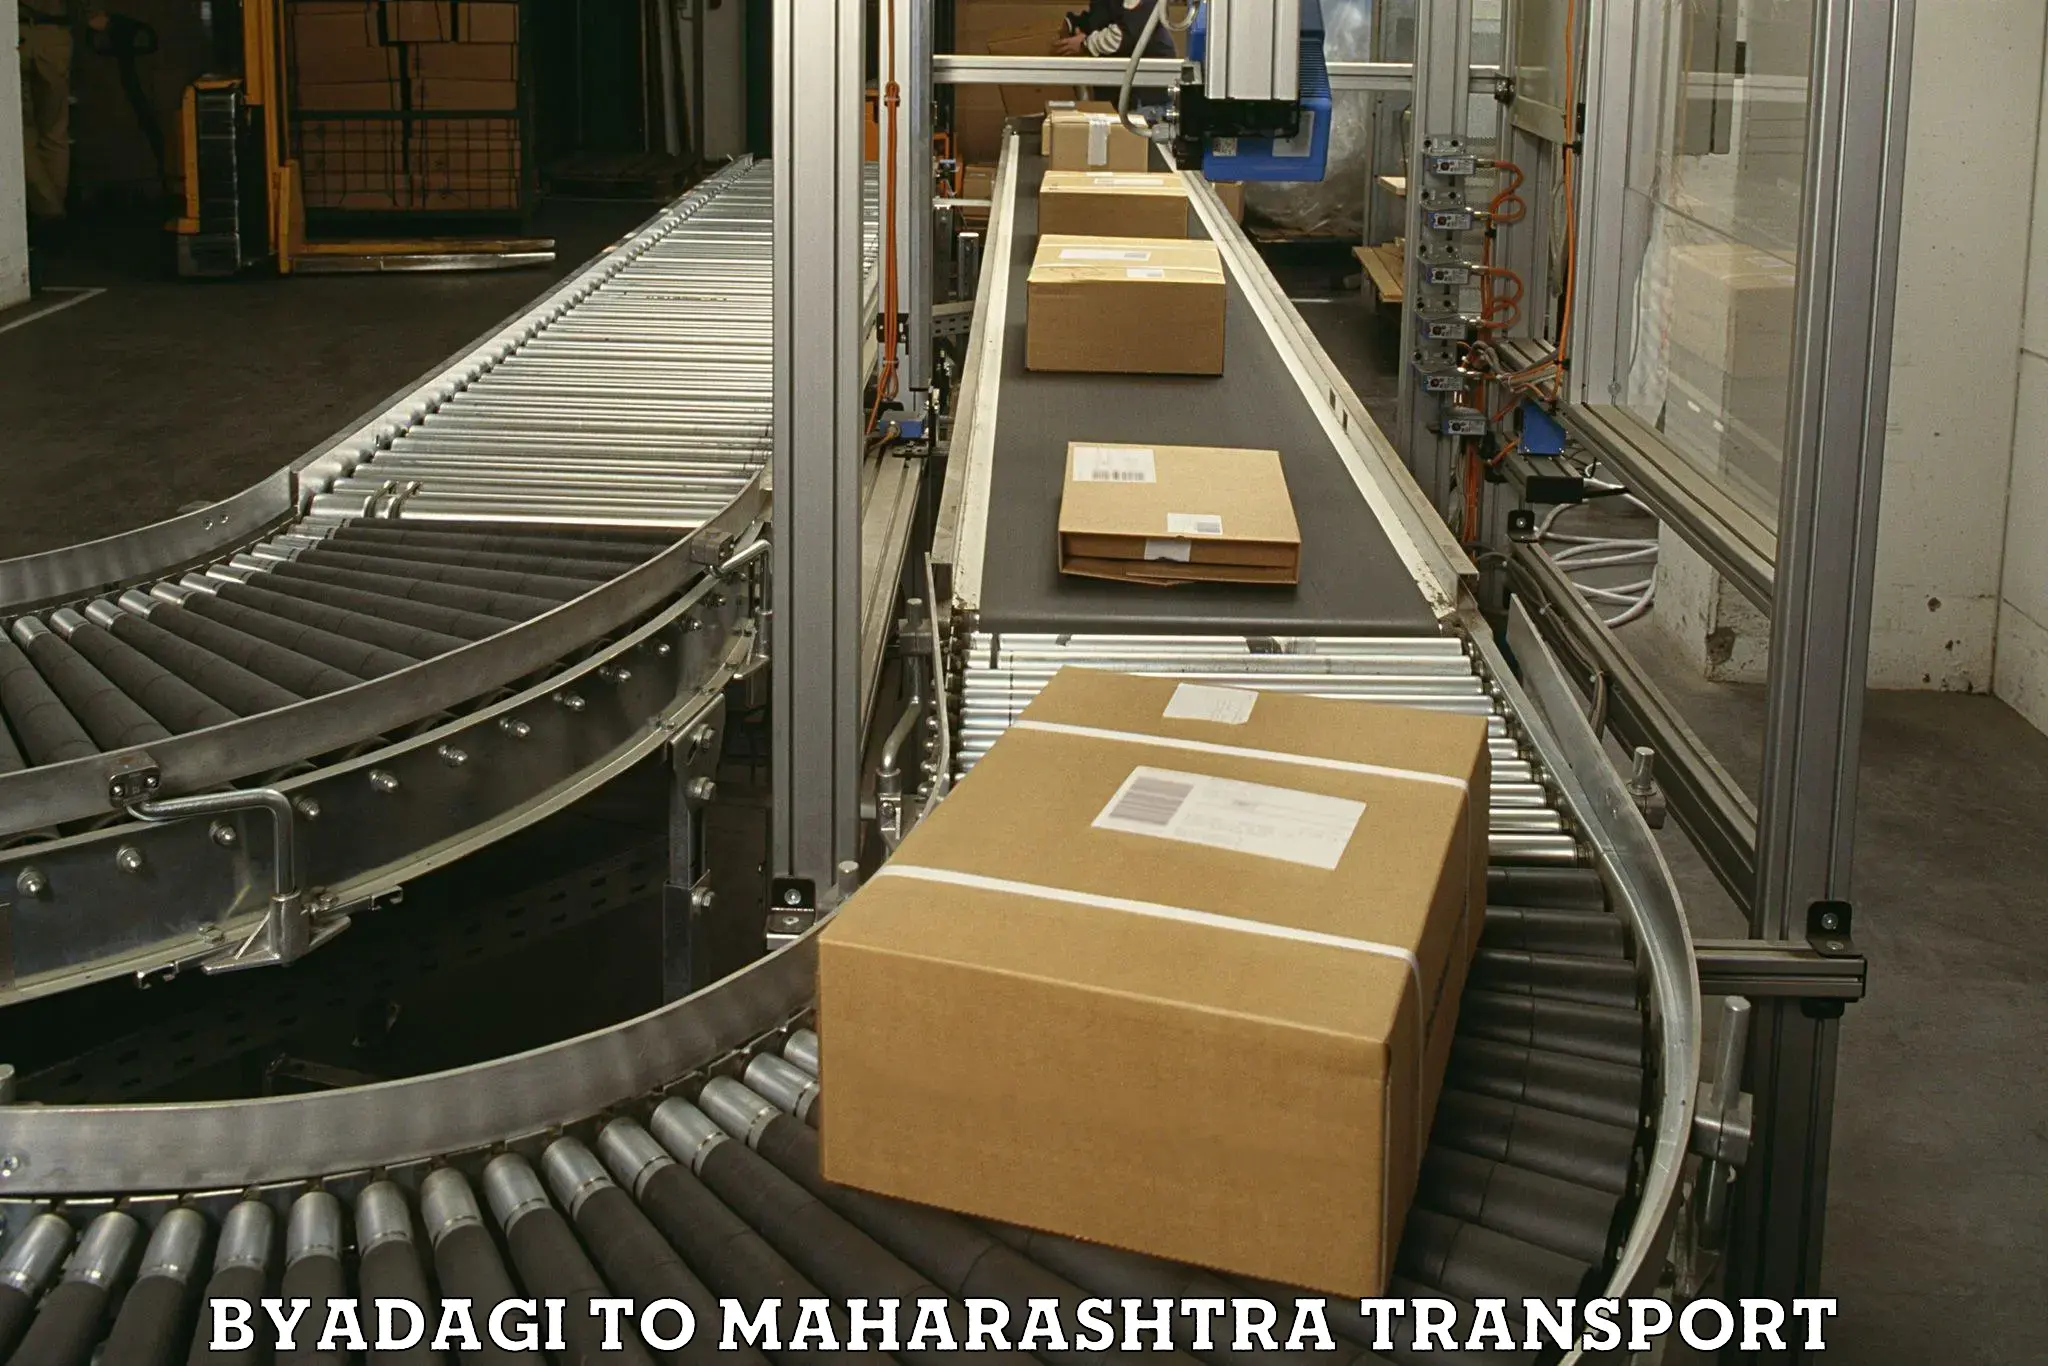 Daily transport service Byadagi to Maharashtra